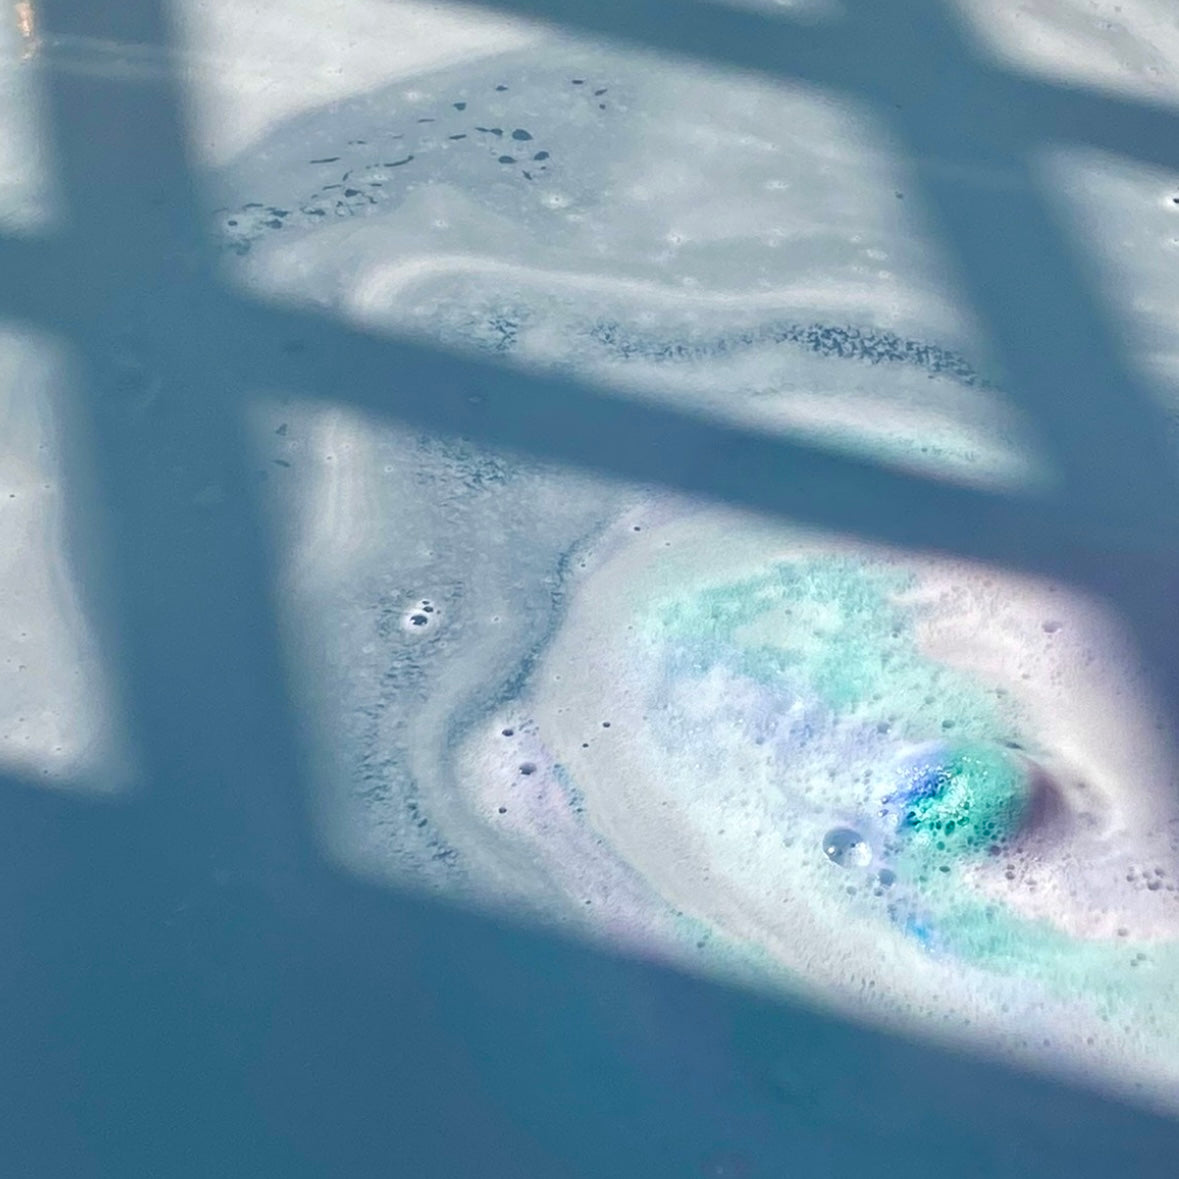 Mermaid Sugar Bath Bomb fizzing in a bath tub